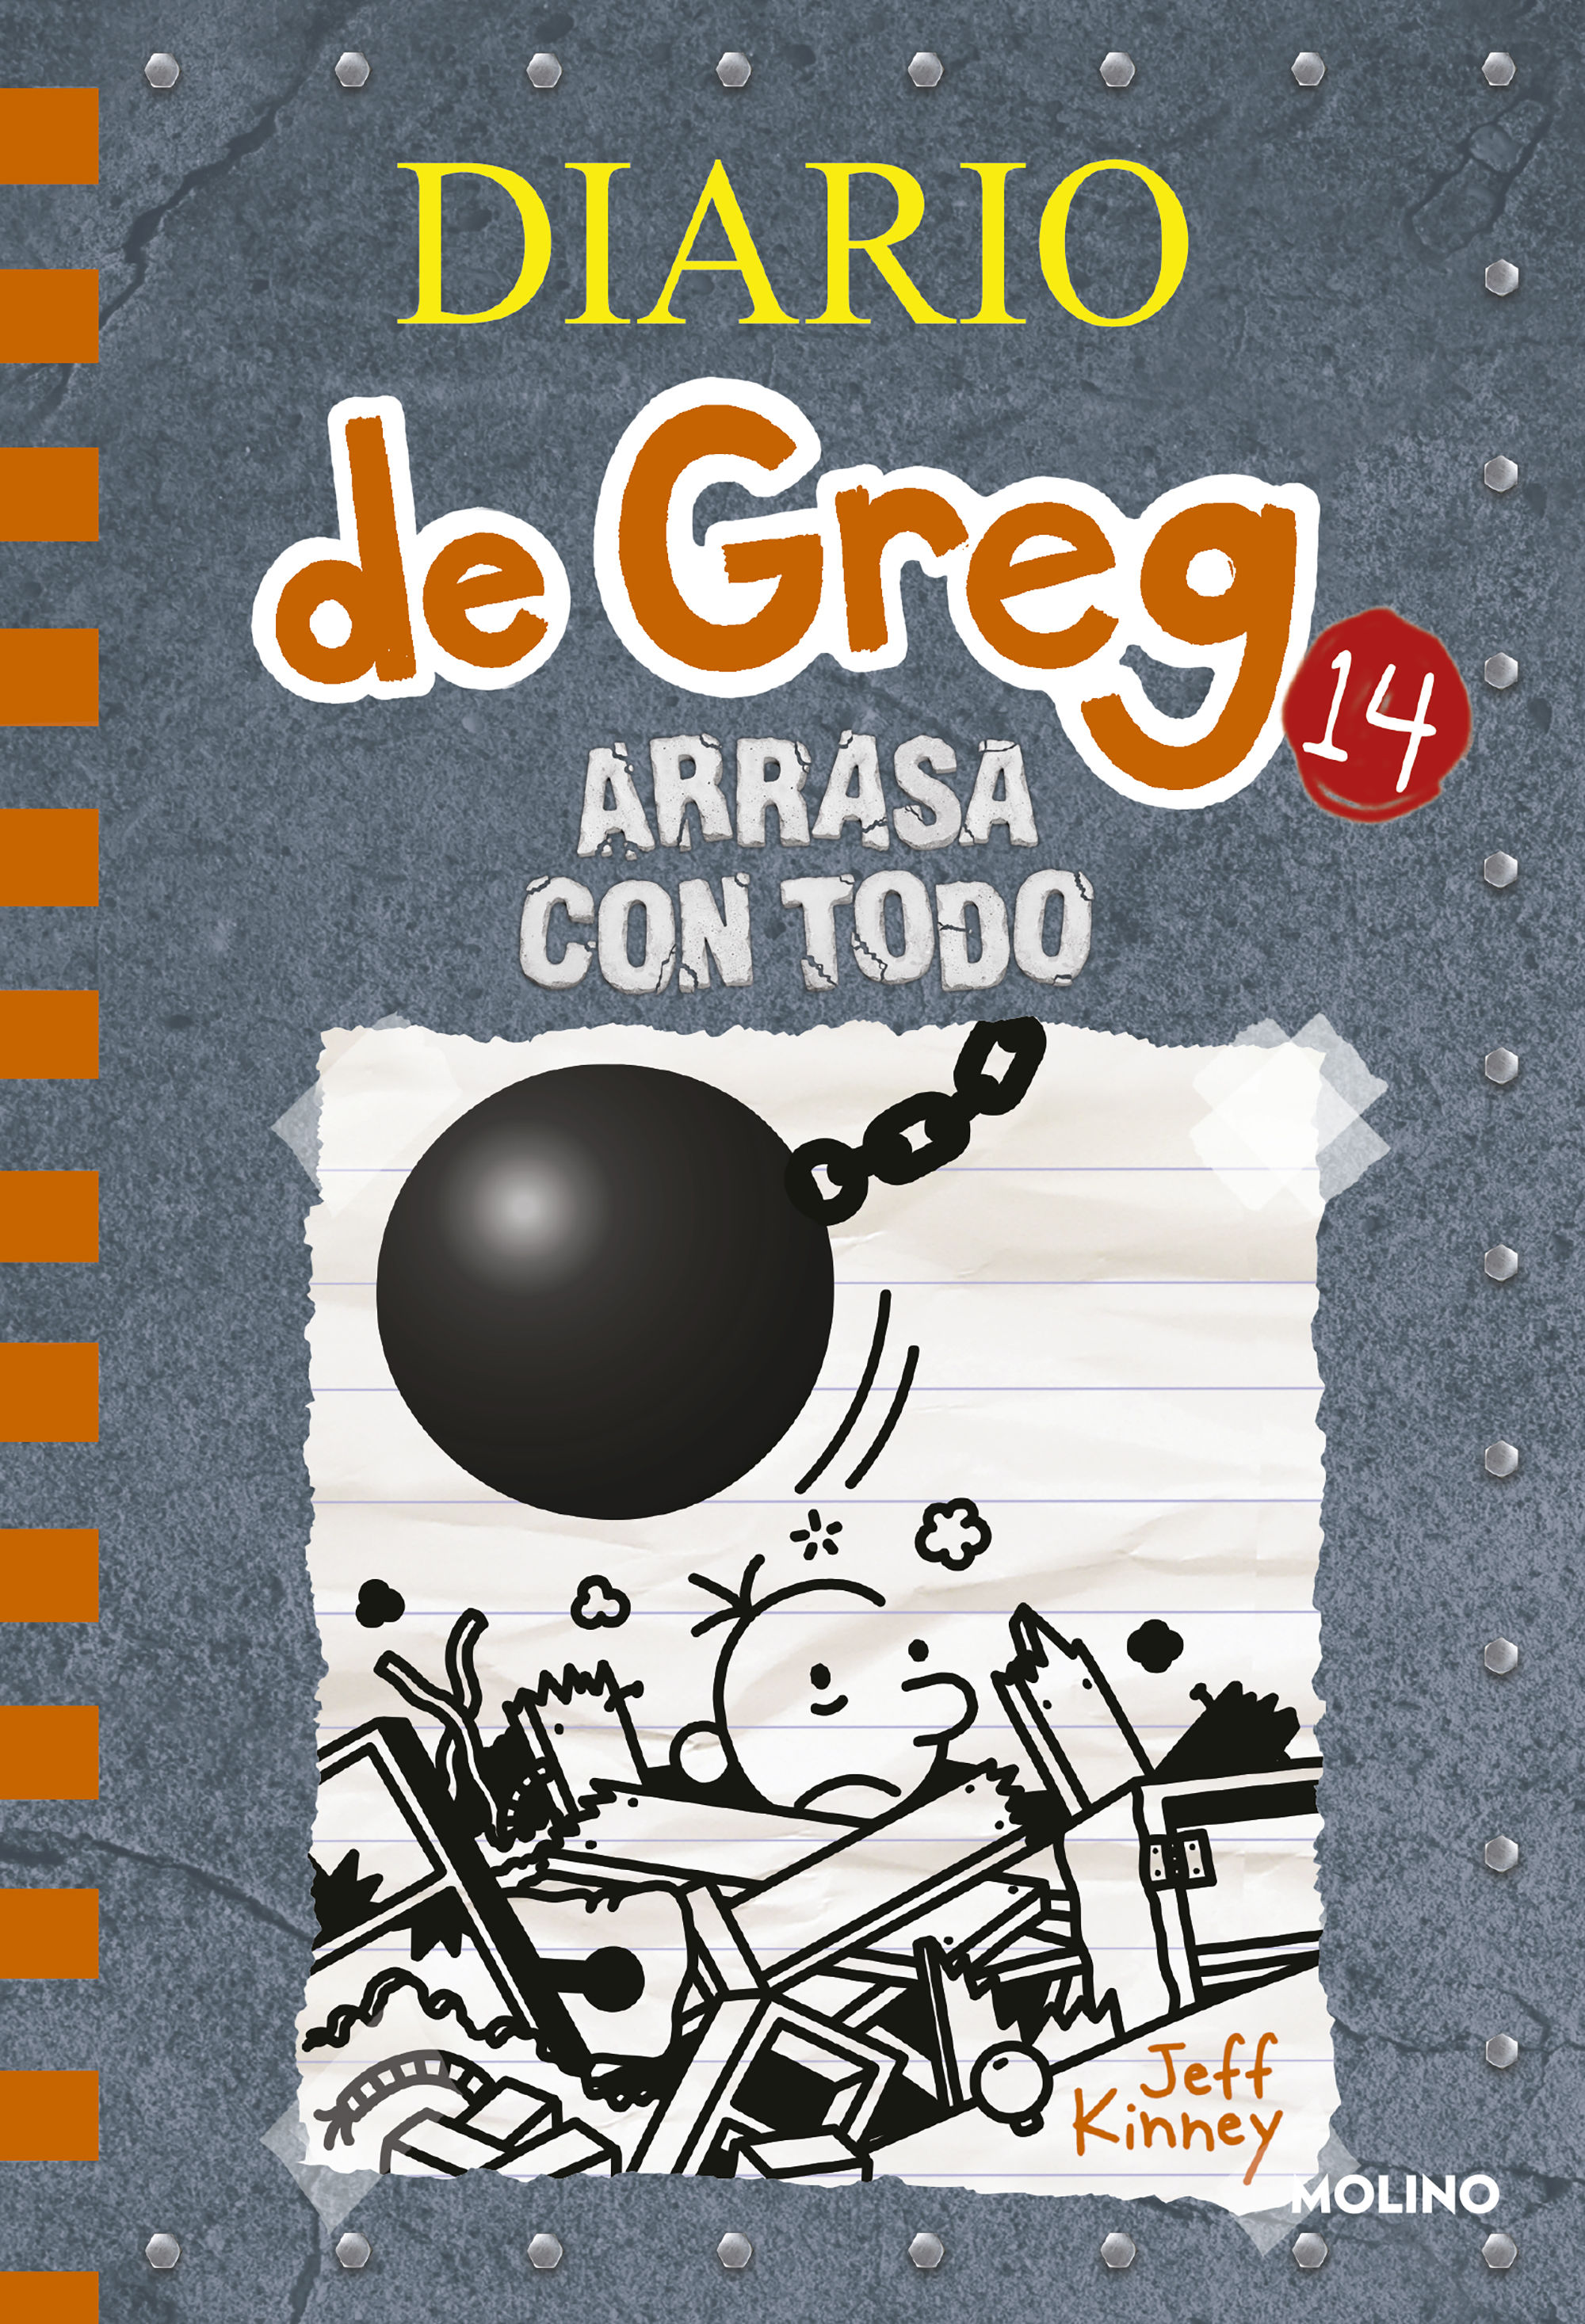 DIARIO DE GREG 14